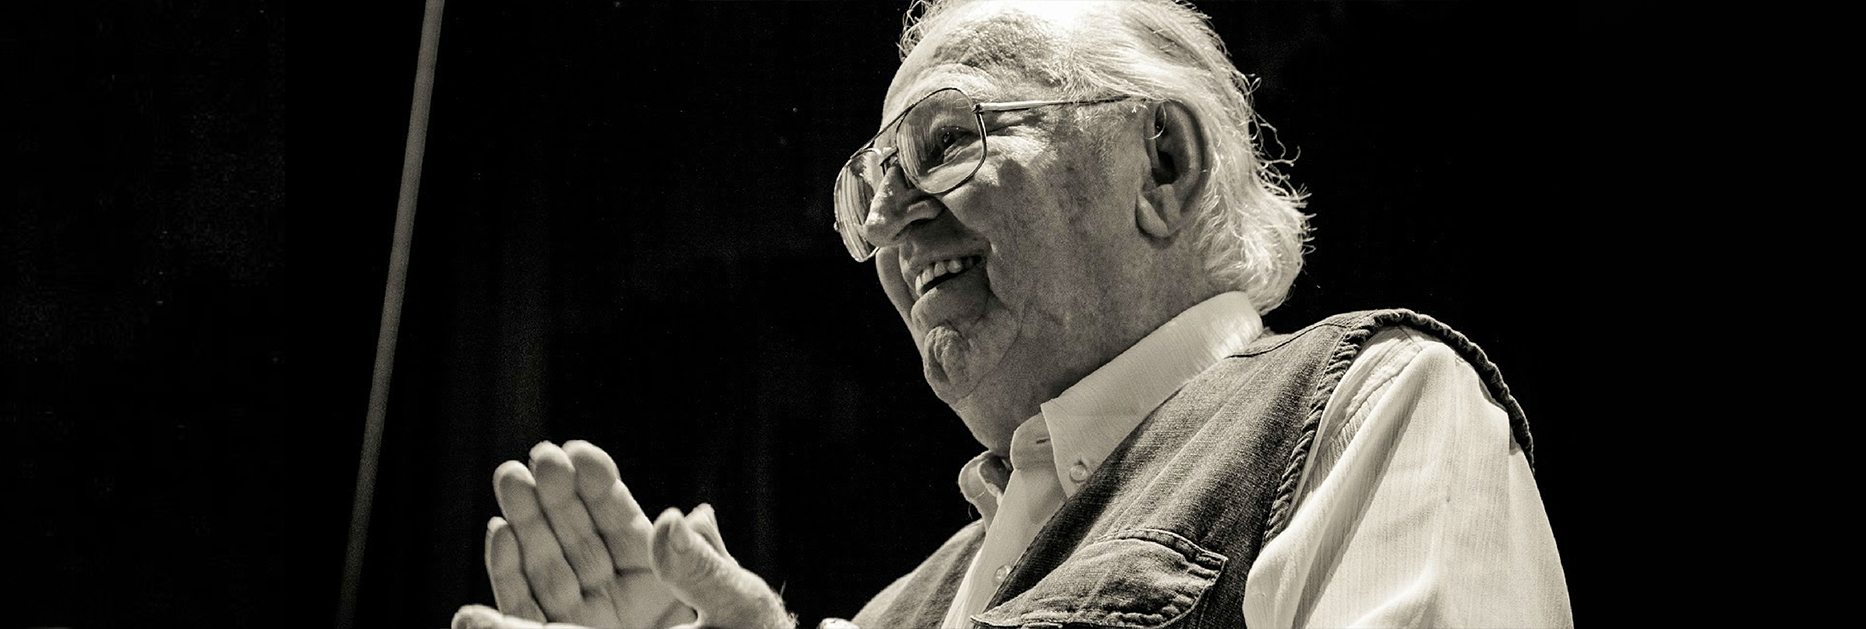 Edino Krieger faz 90 anos e recebe diversas homenagens nesta semana